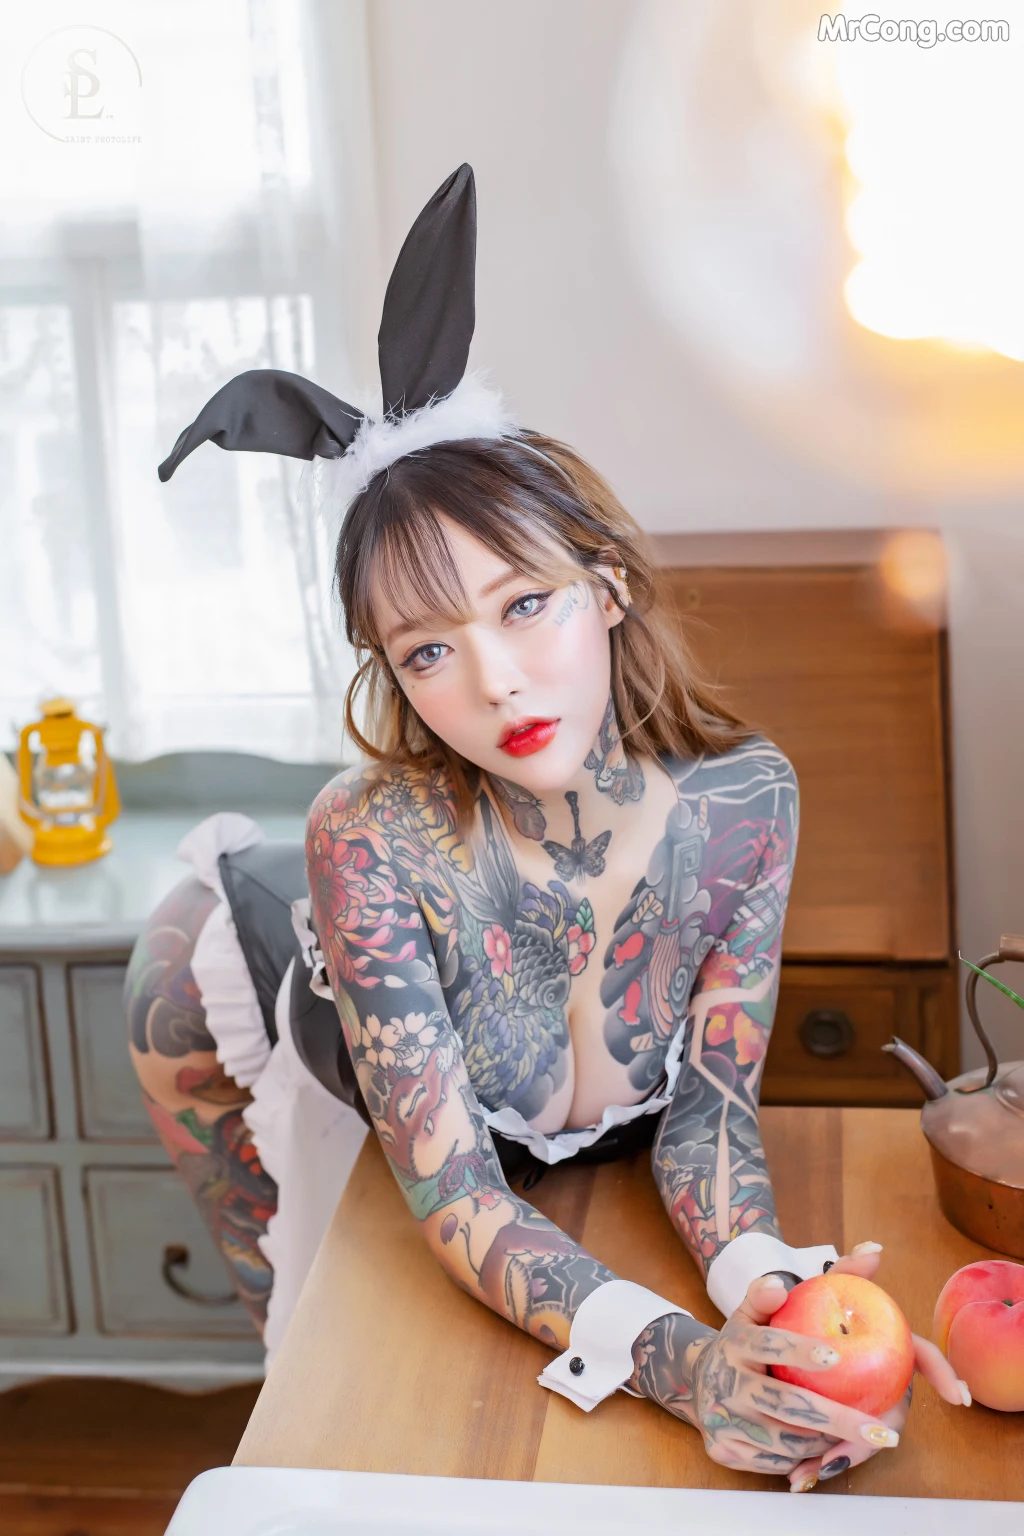 SAINT Photolife - YoKo Vol.02: Bunnygirl (73 photos) photo 1-13